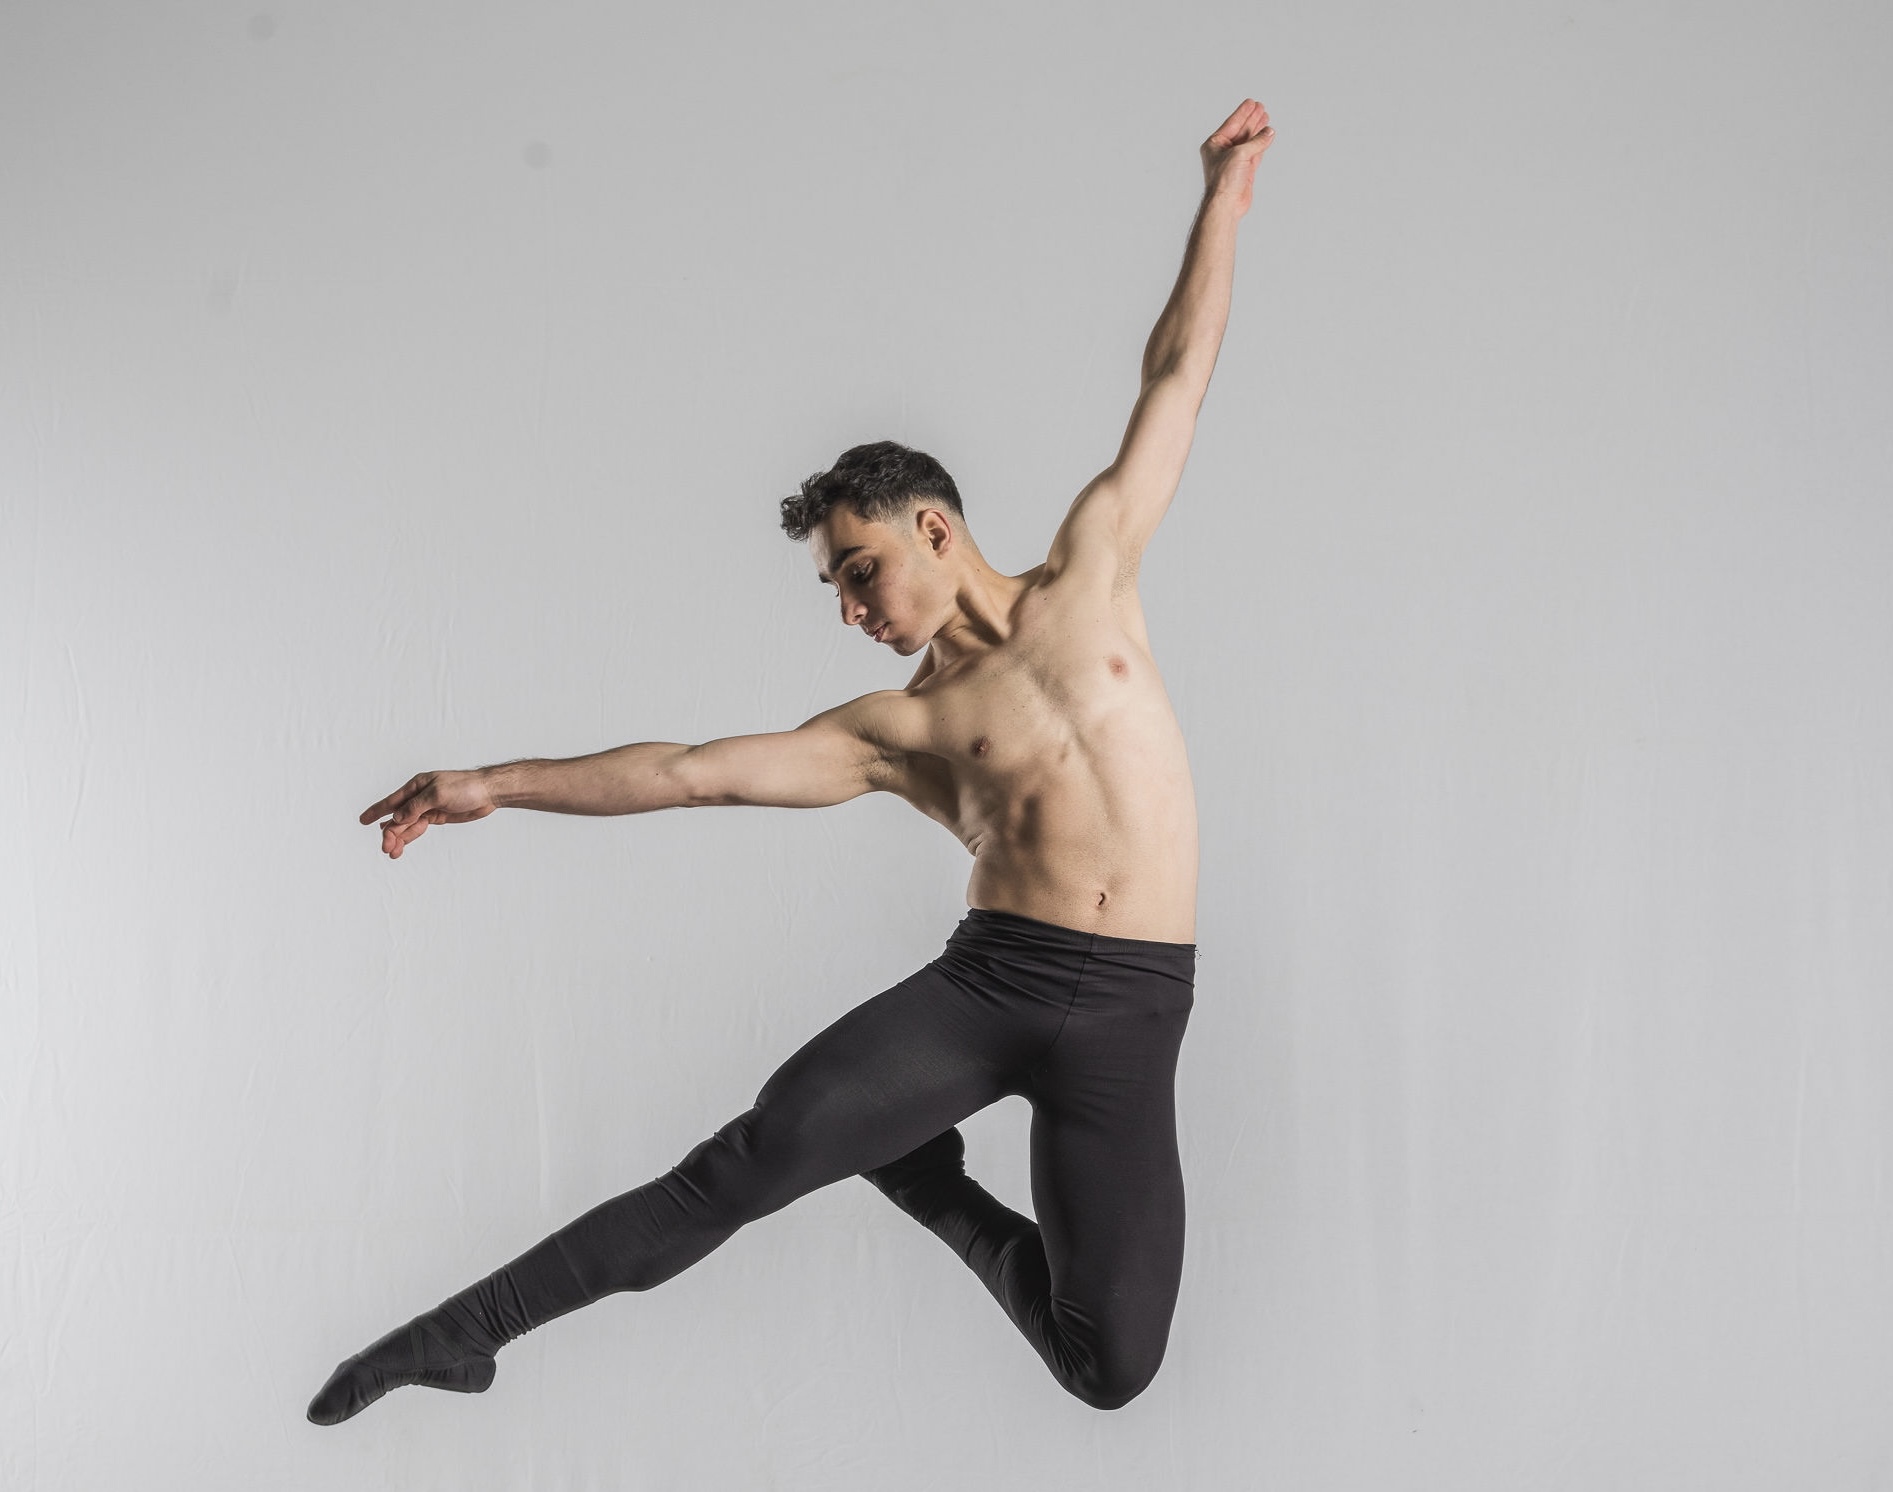 Poses de bailarinas | Ballet poses, Dancing drawings, Ballet drawings